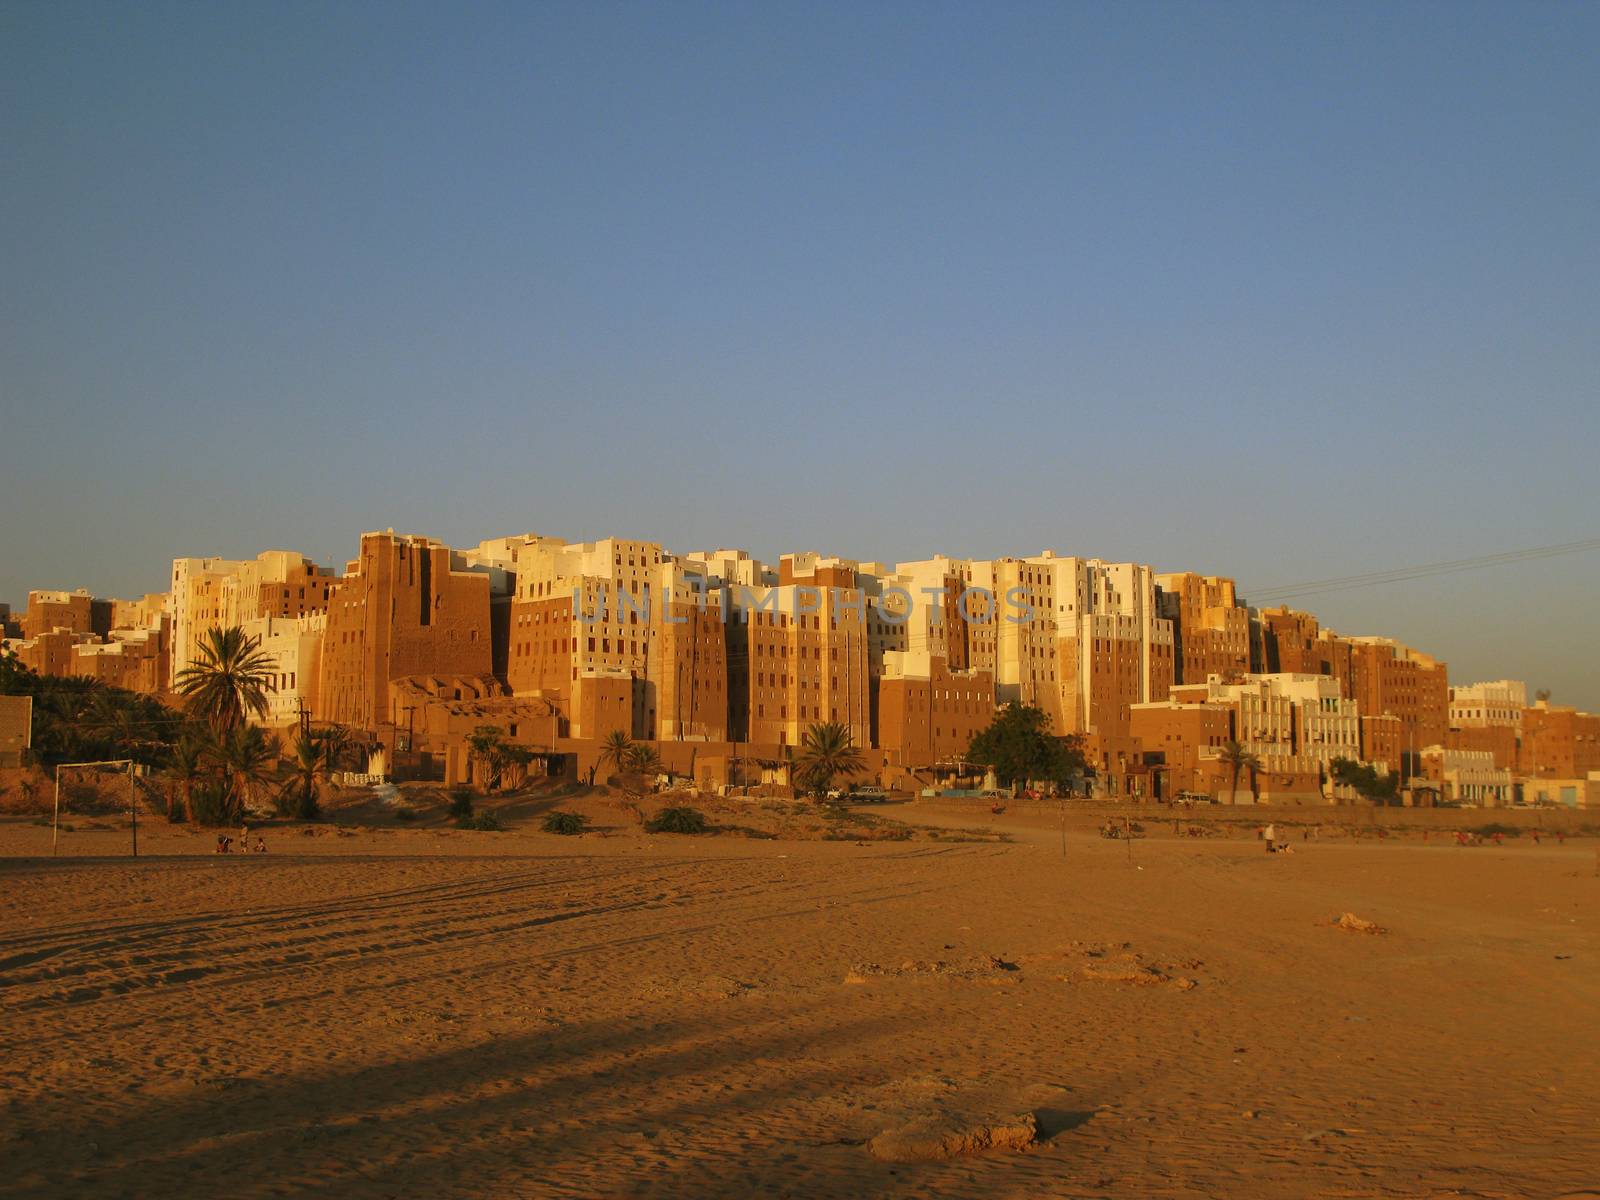 Shibam mud skyscrapers, Hadramout by homocosmicos